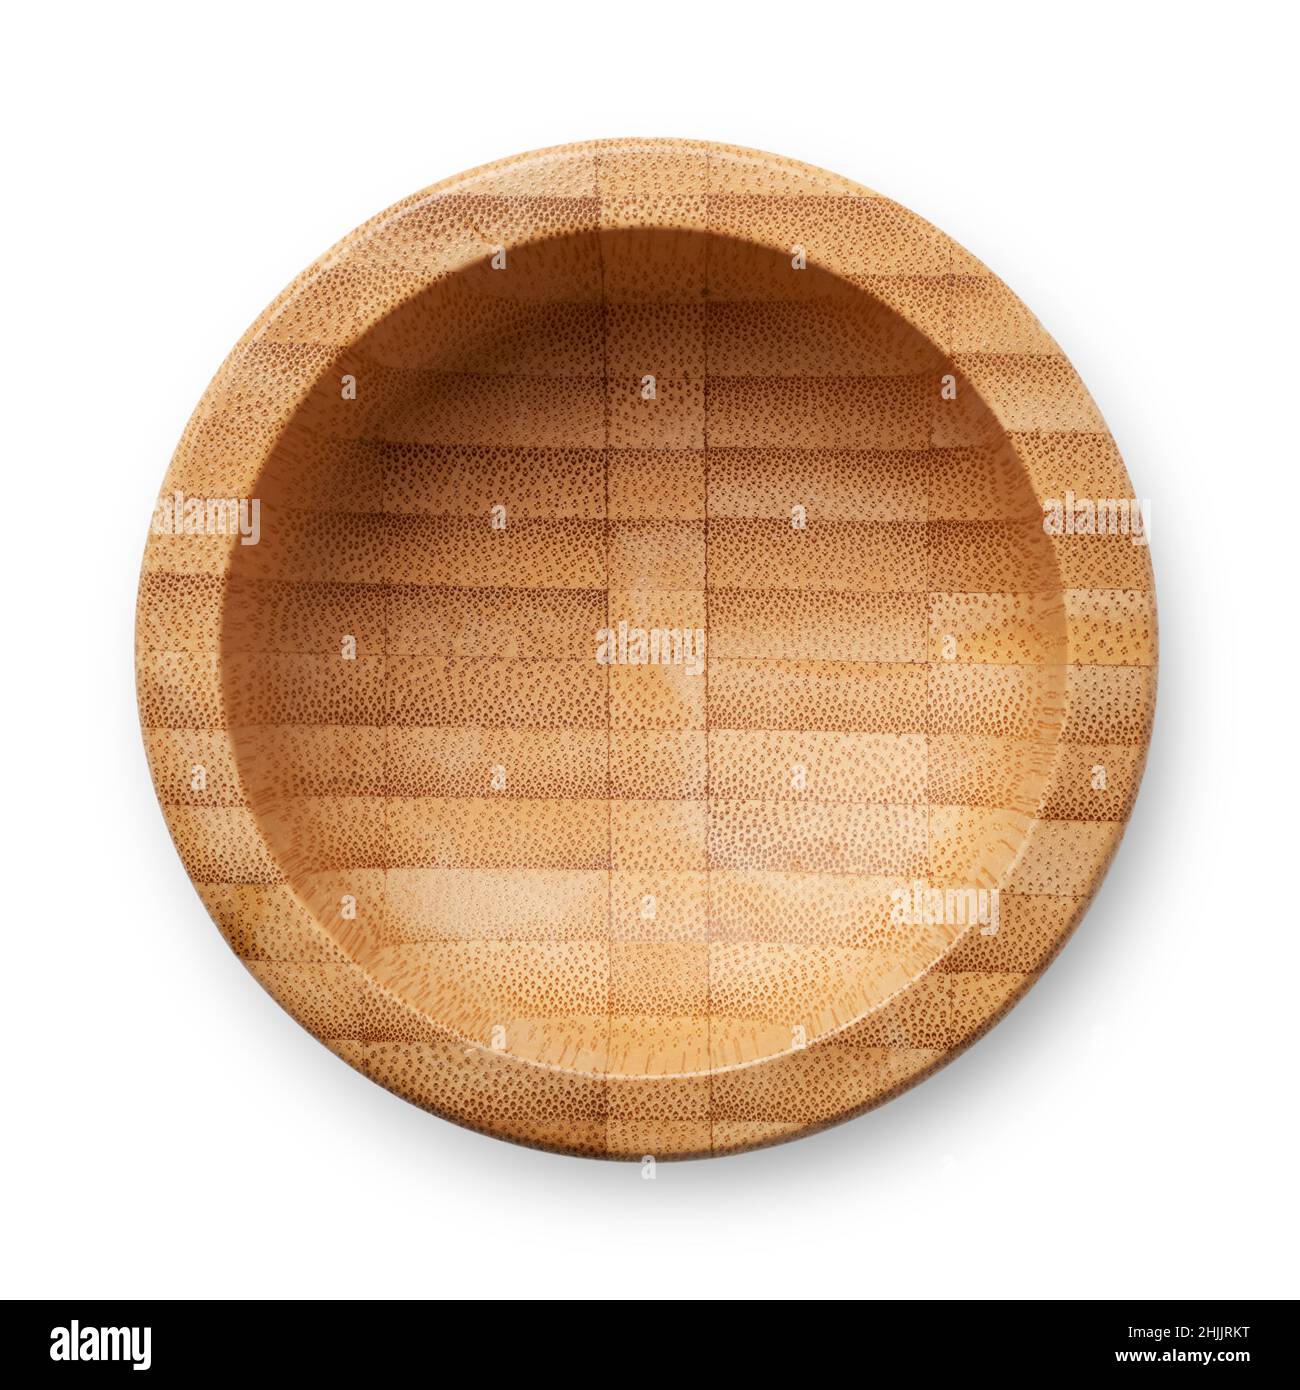 Objetos aislados: Cuenco de madera vacío, utensilio de cocina tradicional, sobre fondo blanco Foto de stock